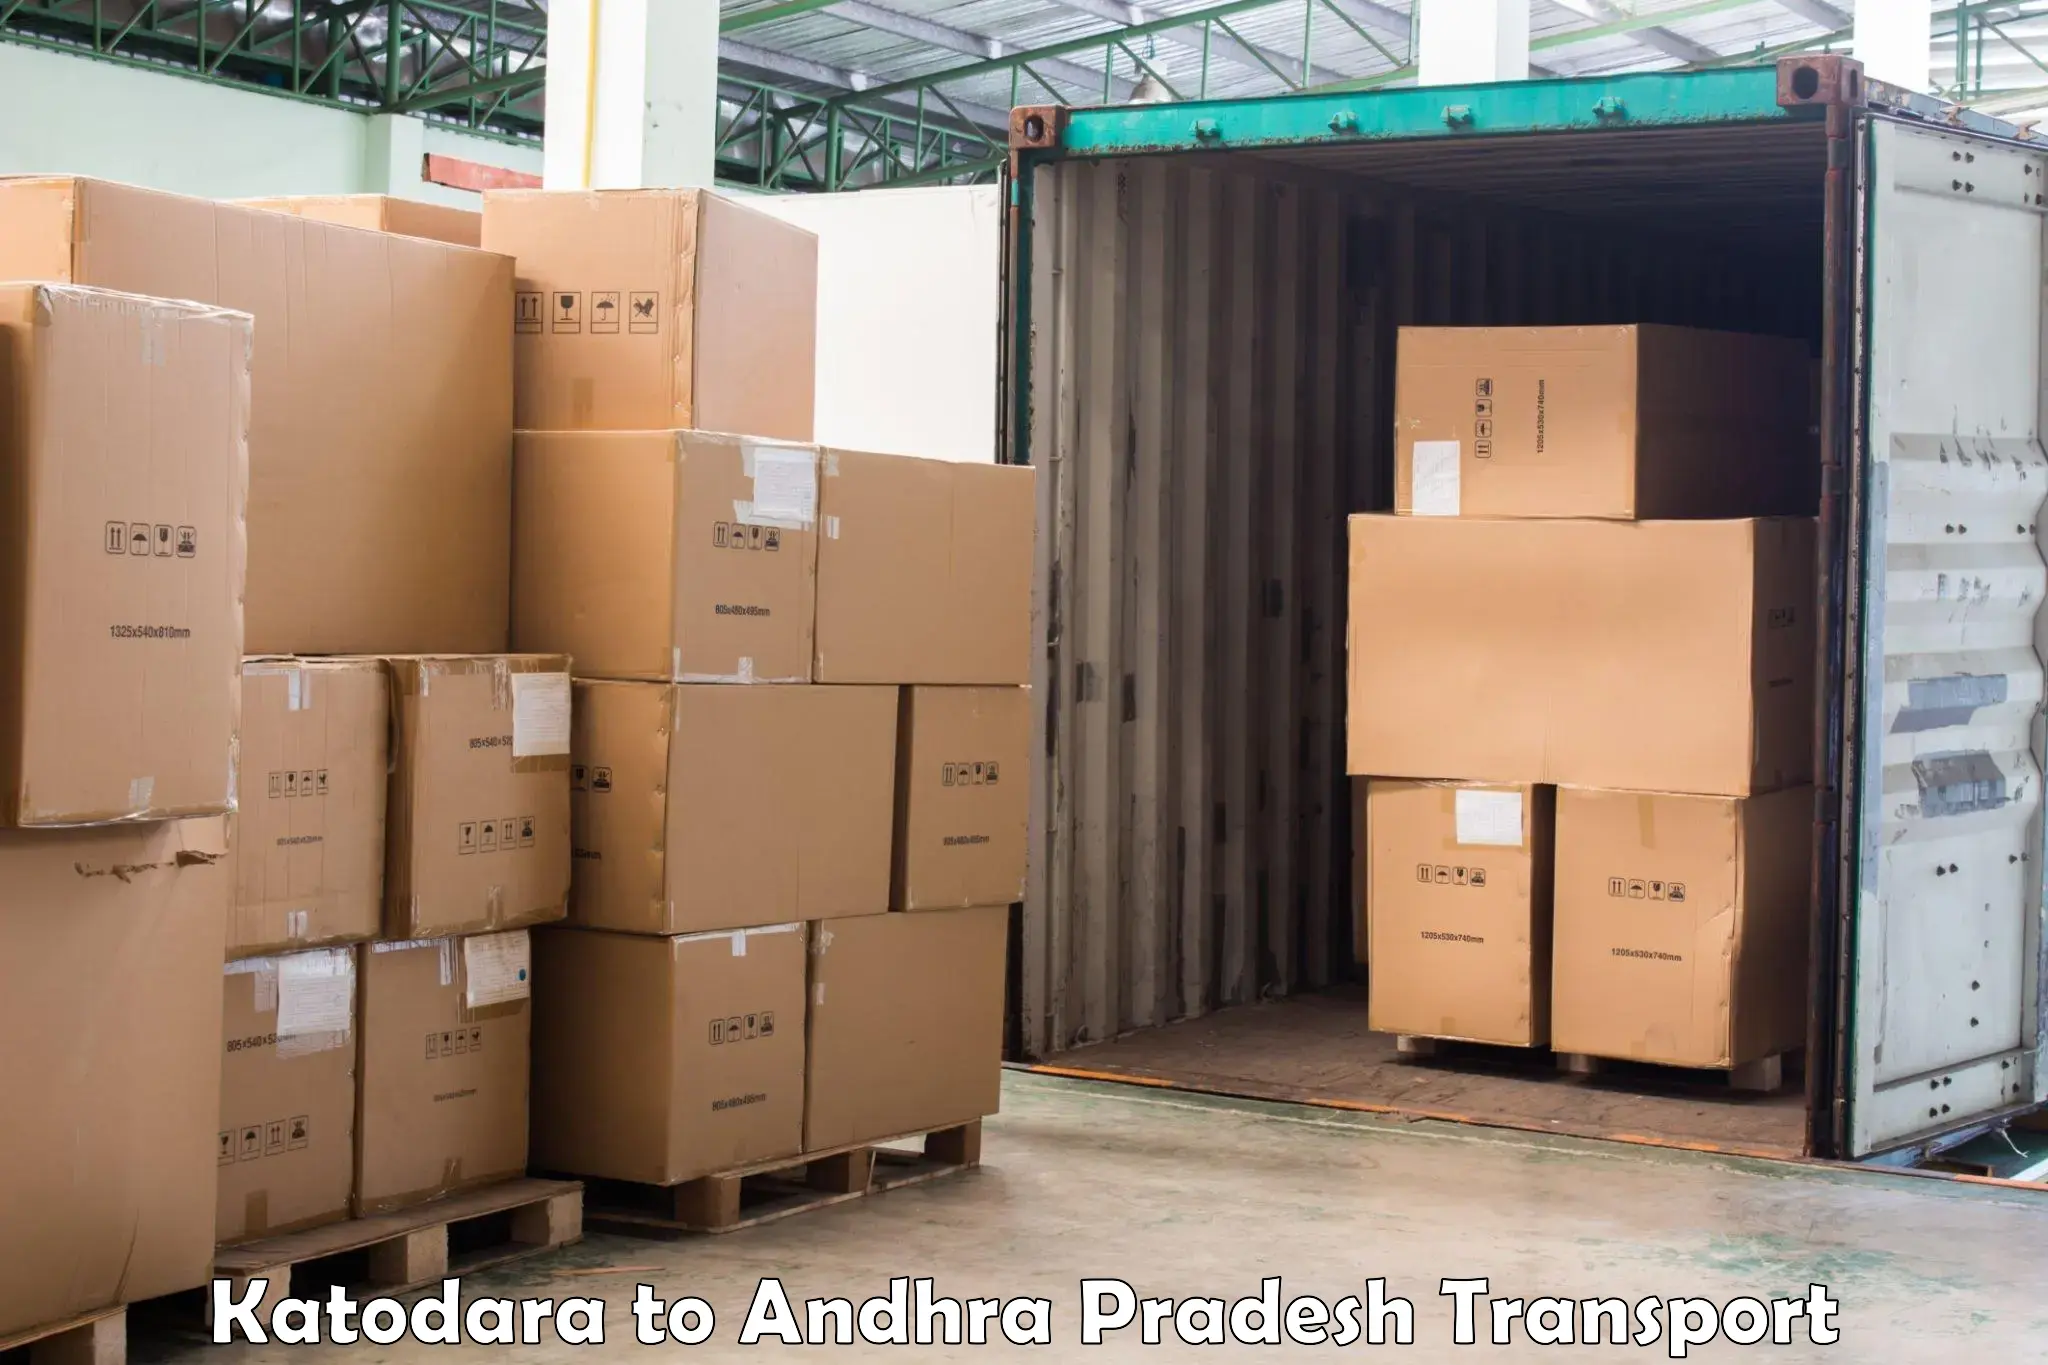 Pick up transport service in Katodara to Giddalur